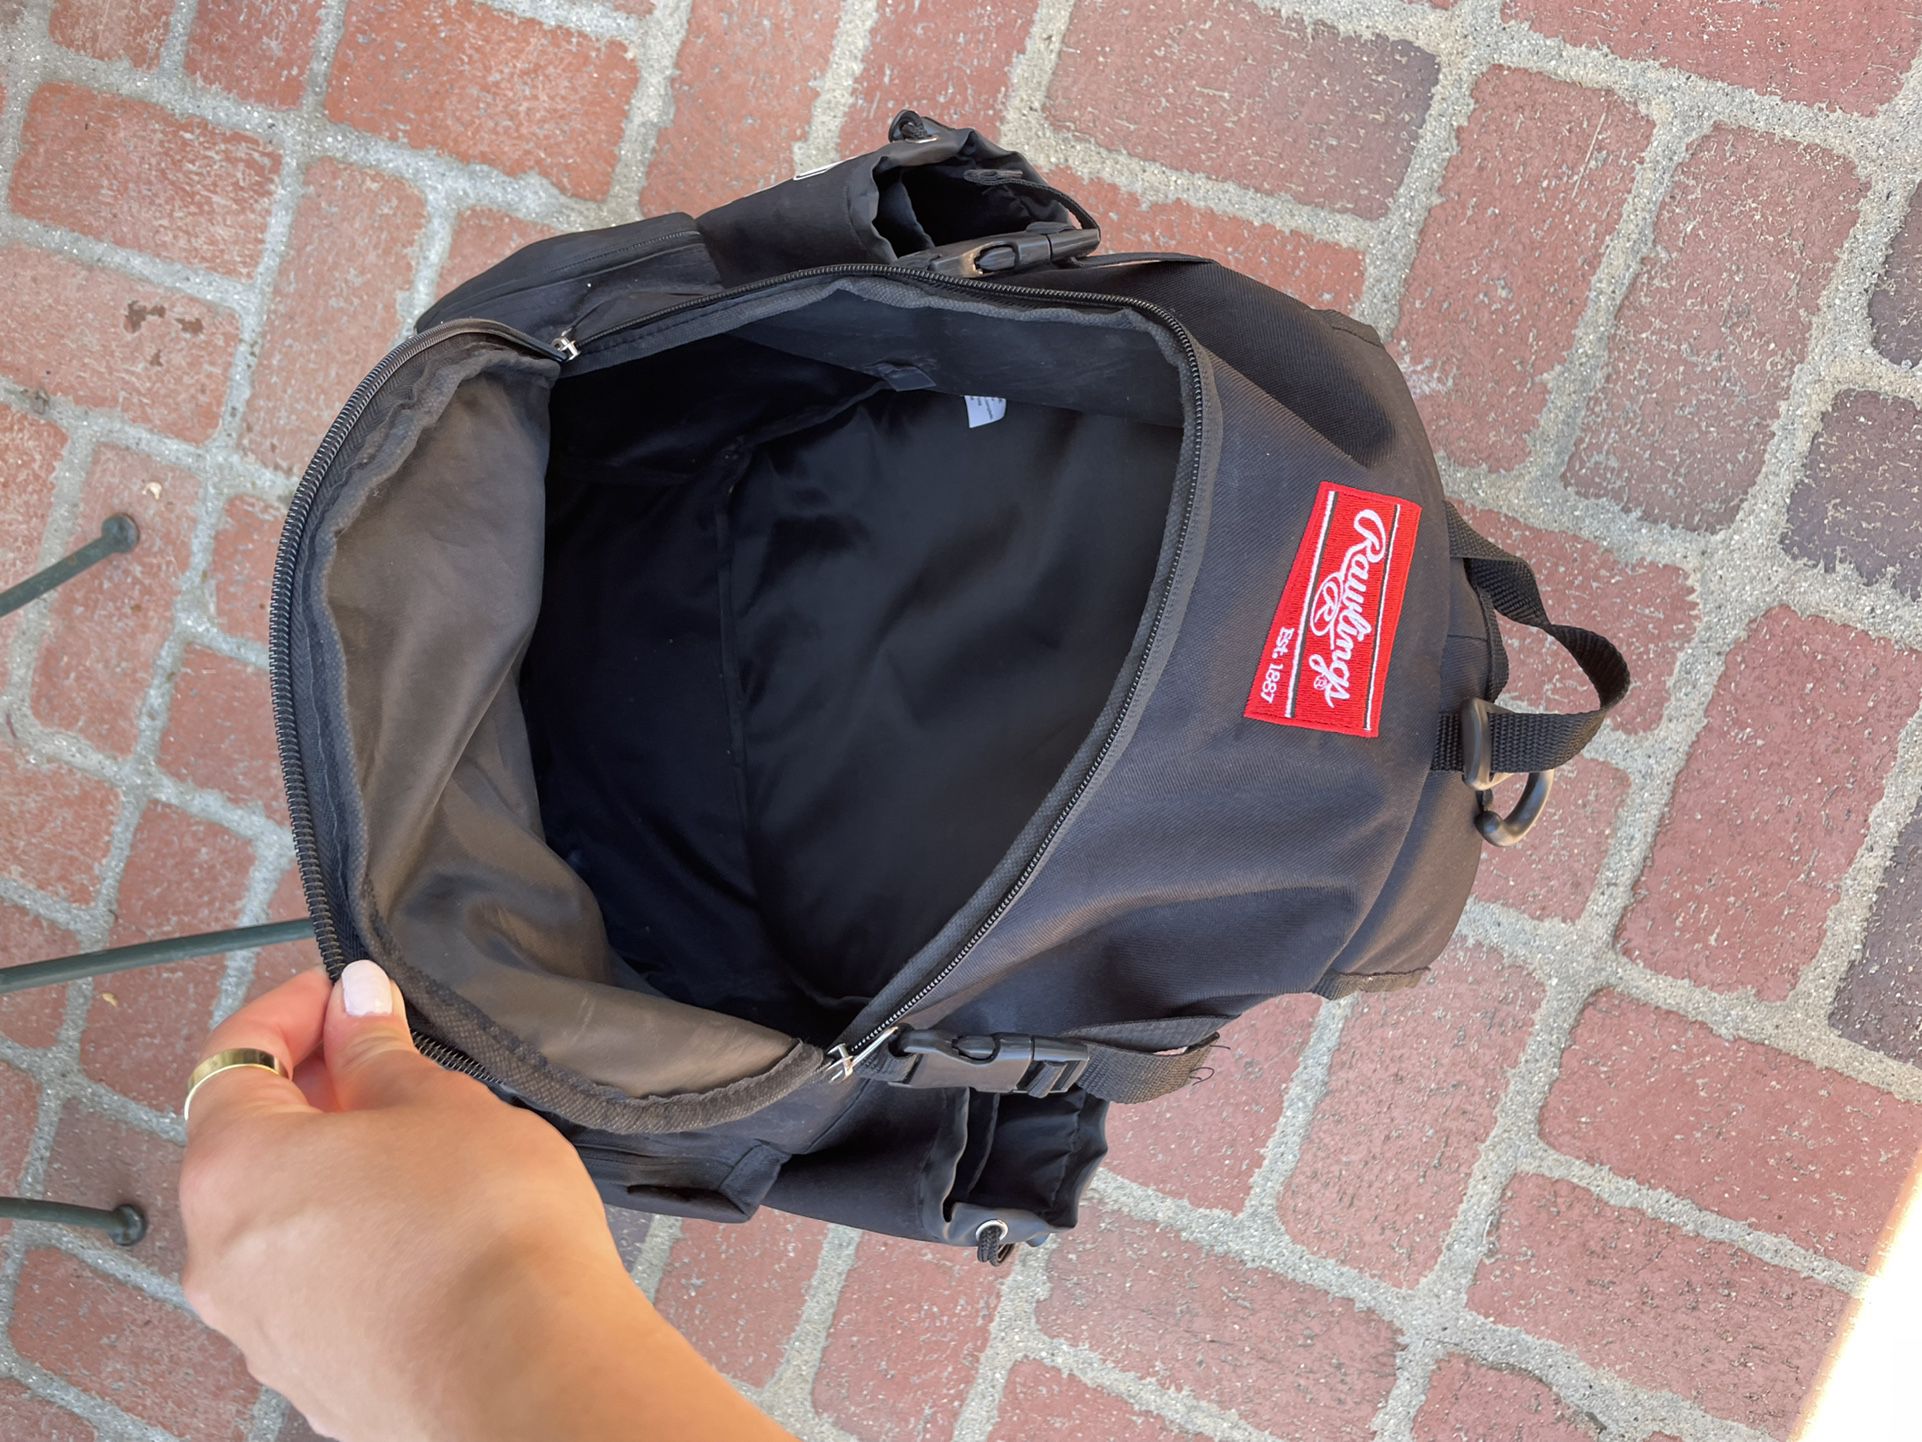 Rawlings softball backpack